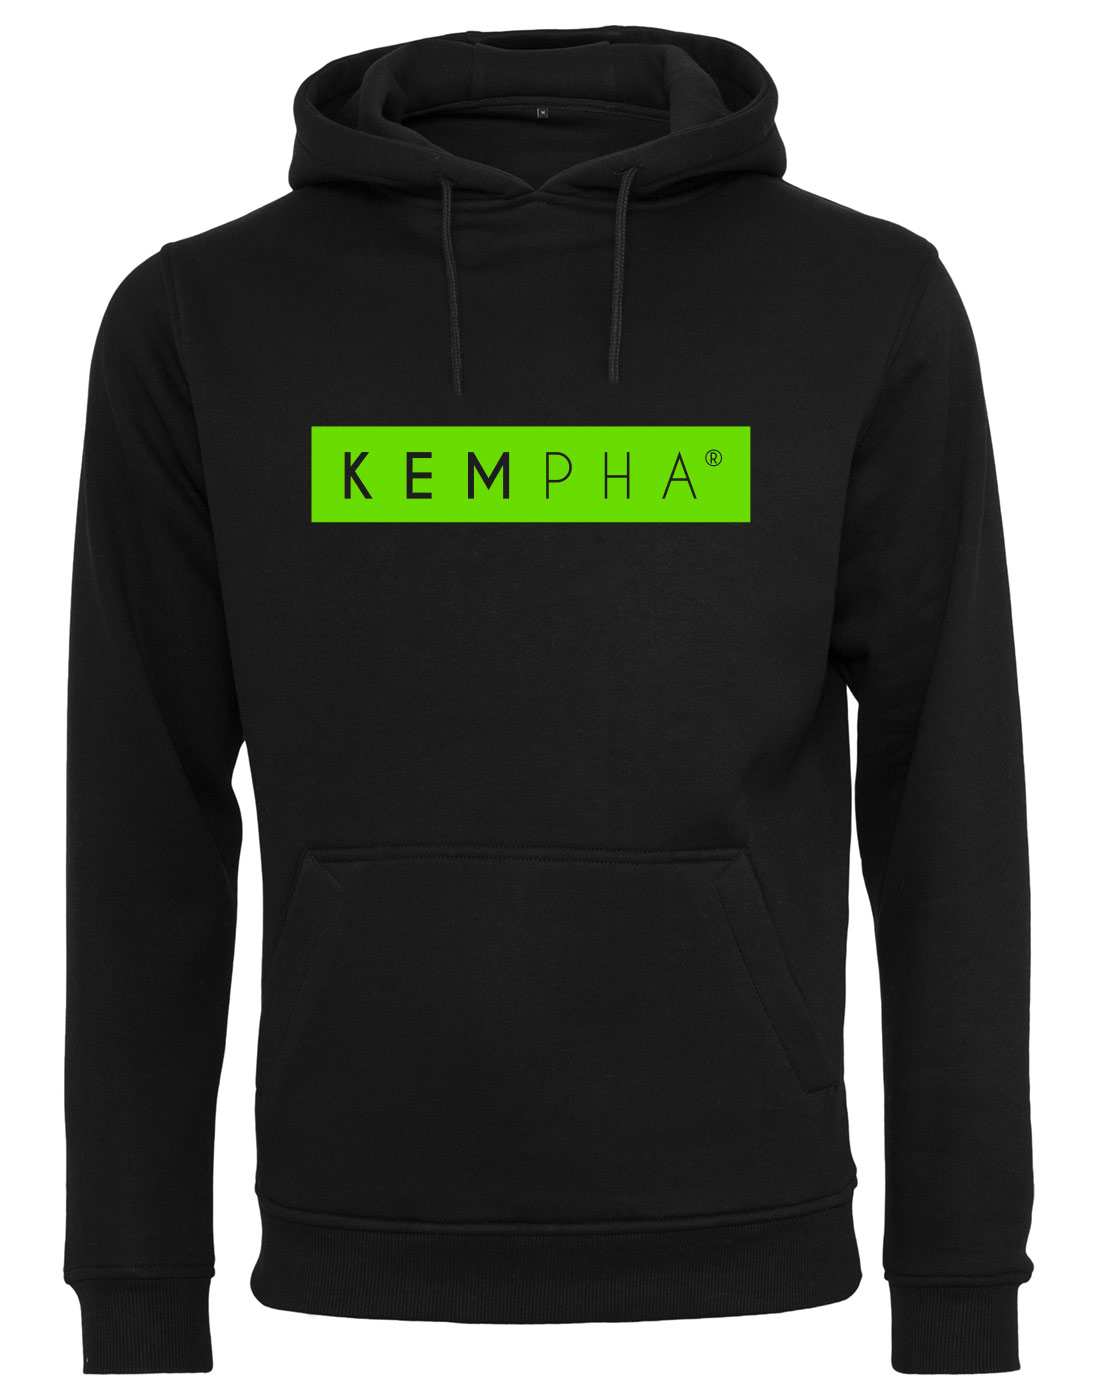 Kempha Premium Hoodie NEONgrn auf schwarz